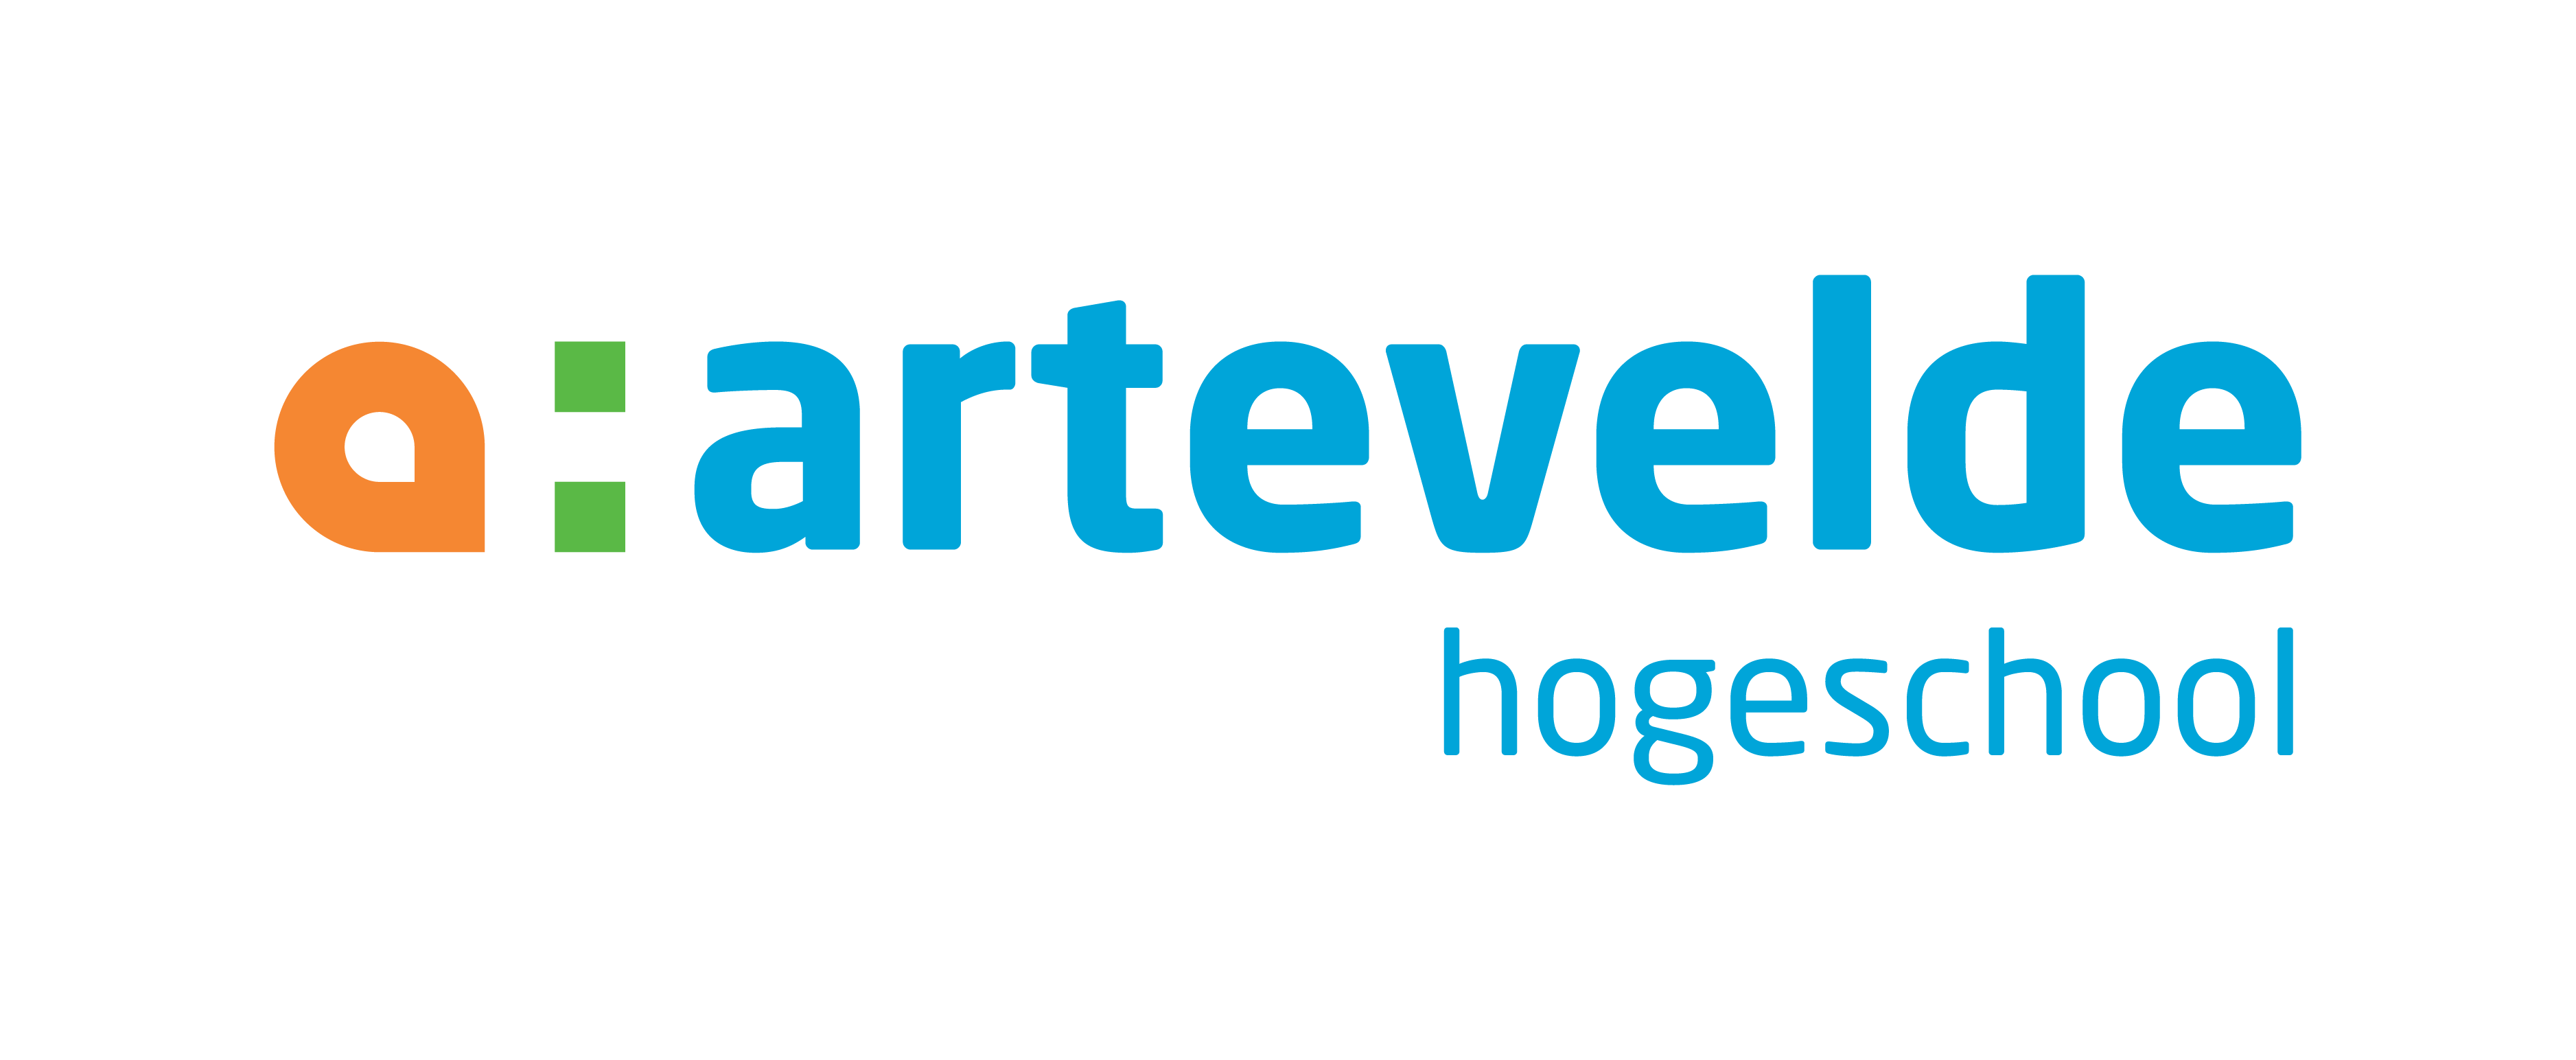 ARTEVELDE hs logo RGB